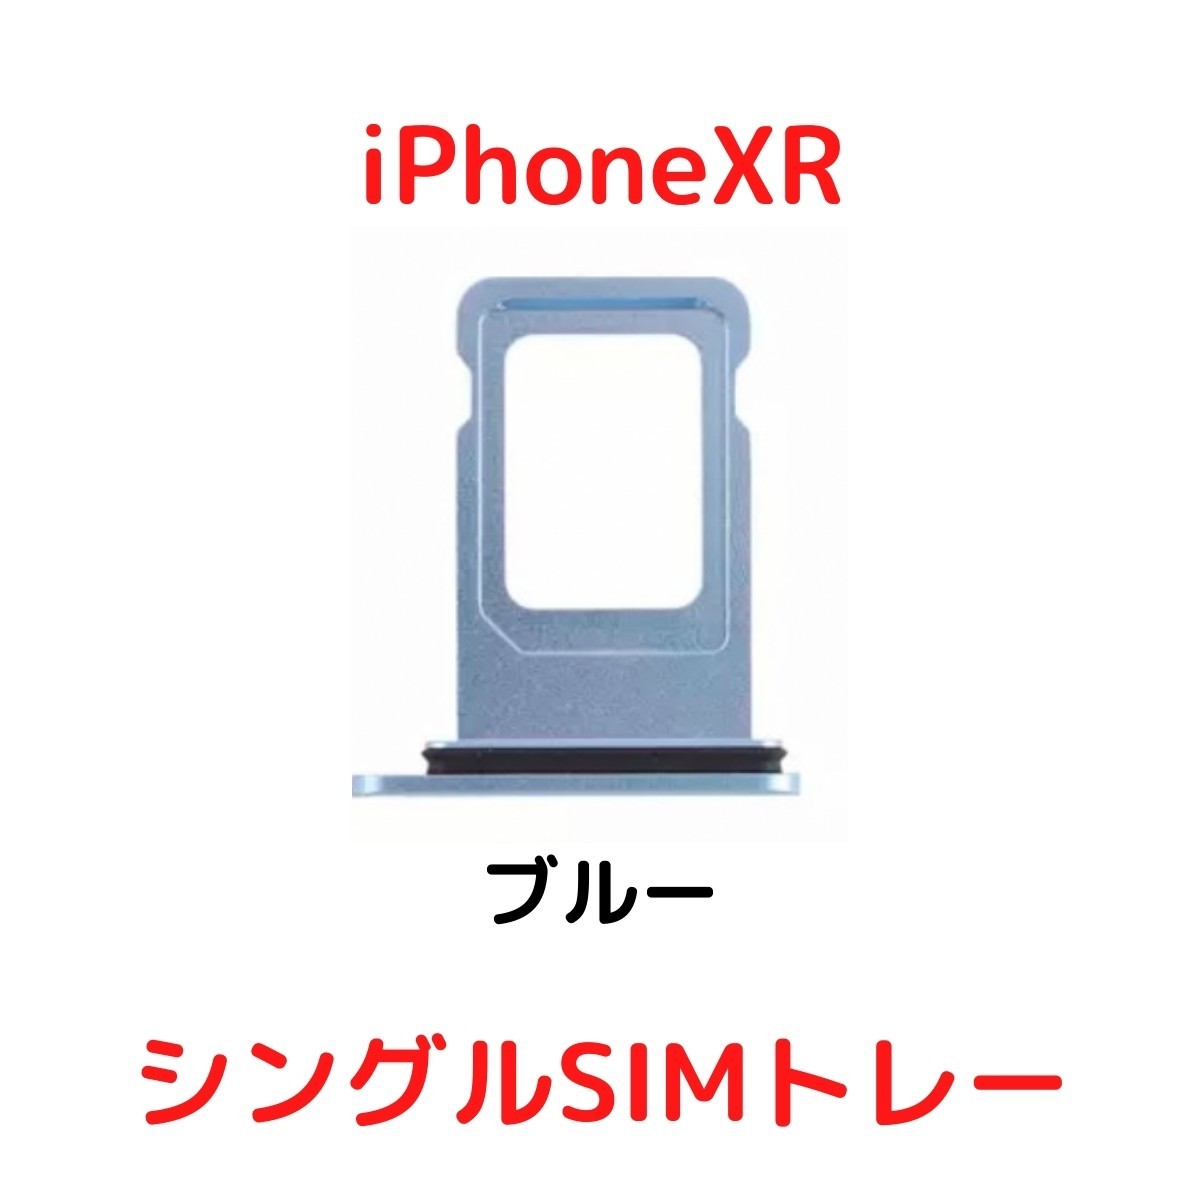 【選べる6色】 iPhoneXR レッド ブルー イエロー ブラック ホワイト コーラル シングルSIM 防水リング付き SIMトレー SIMスロット_画像2